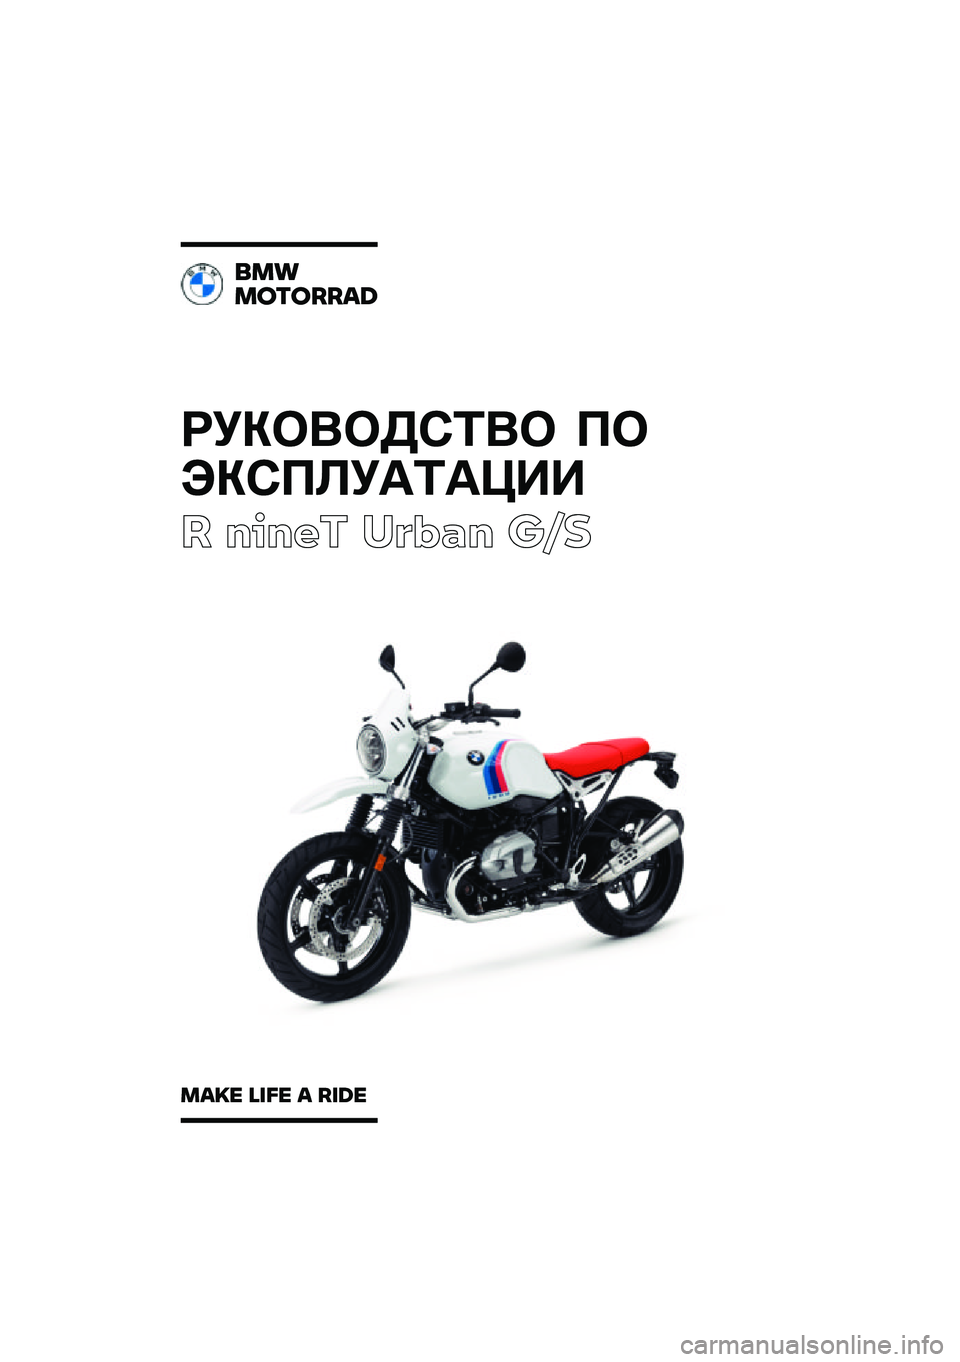 BMW MOTORRAD R NINE T URVAN G/S 2021  Руководство по эксплуатации (in Russian) ��������\b�	�� �
�
���\b�
�\f��
�	�
���
� ����� ��\b�	�
� ��\f�
���
�������\b�	
��\b�
� �\f�
�� �\b ��
�	� 